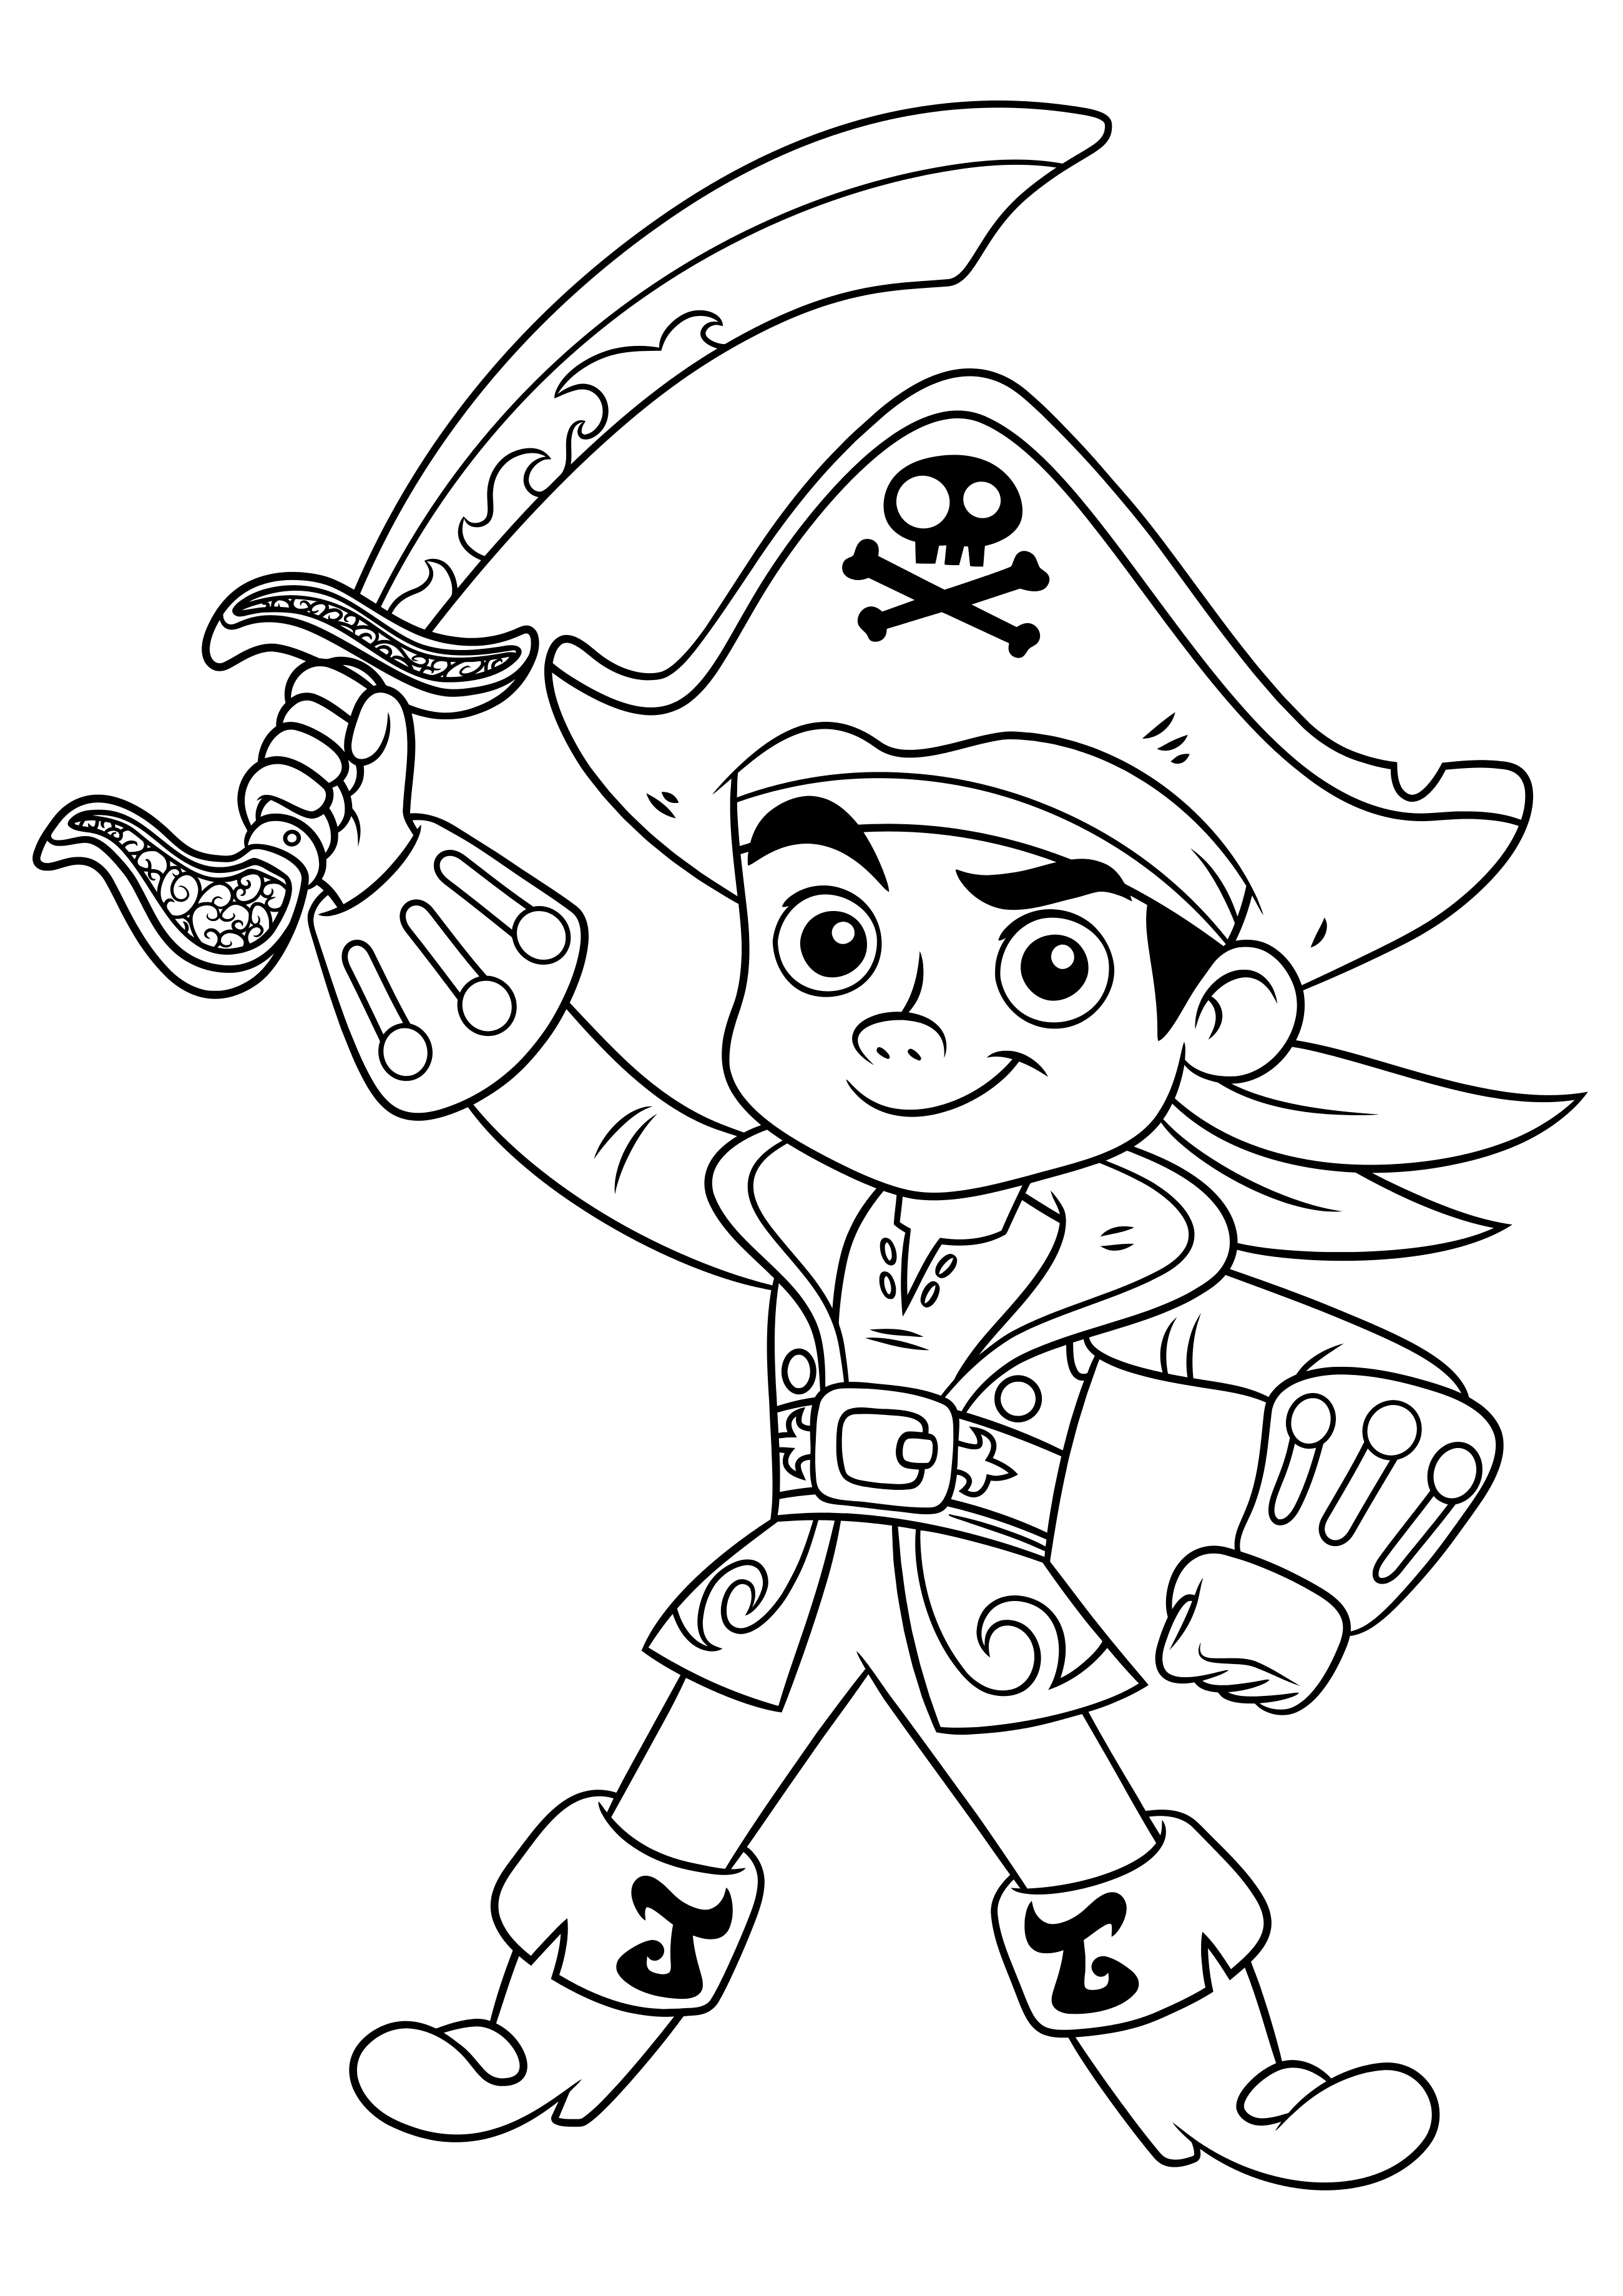 Para Colorear Piratas de Nunca Jamás - Imprimir